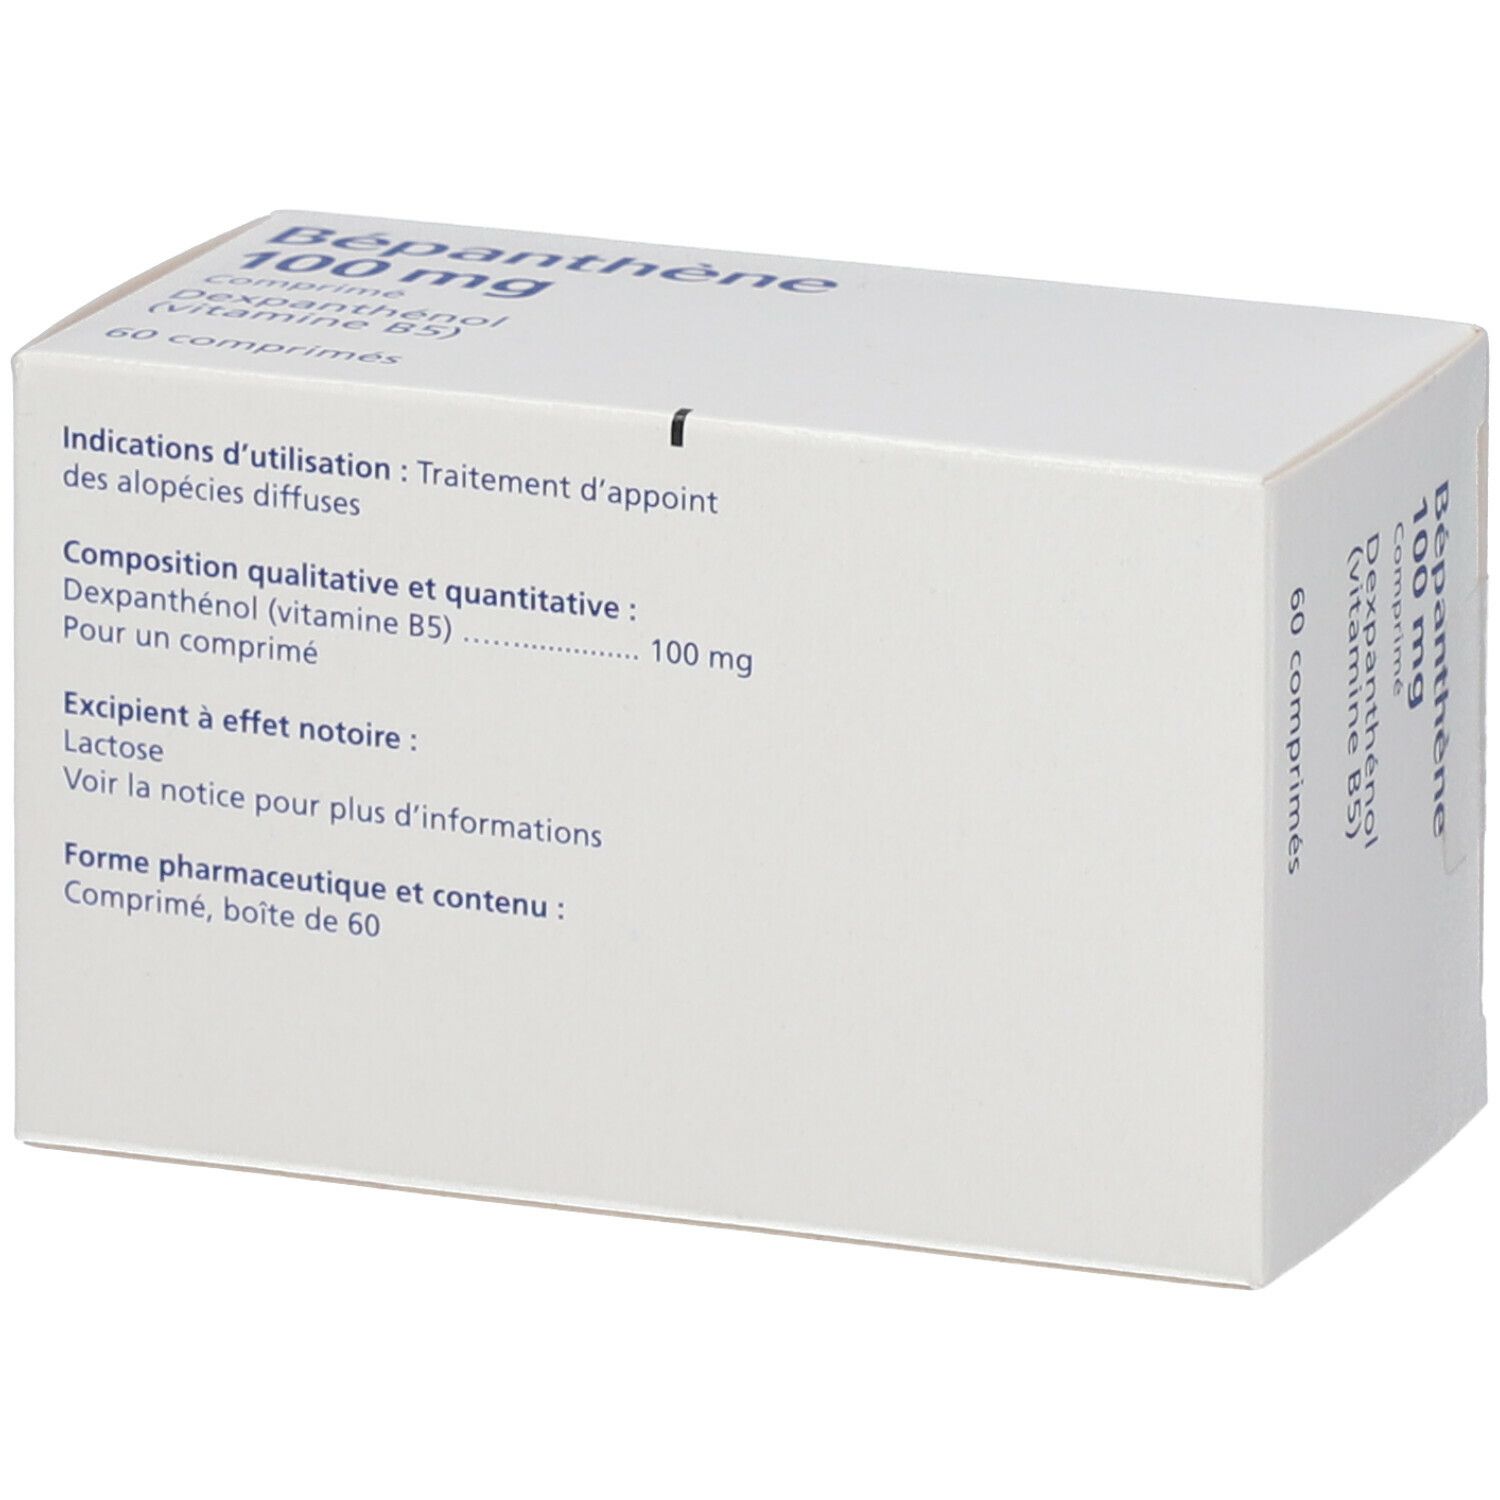 Bépanthène 100 mg